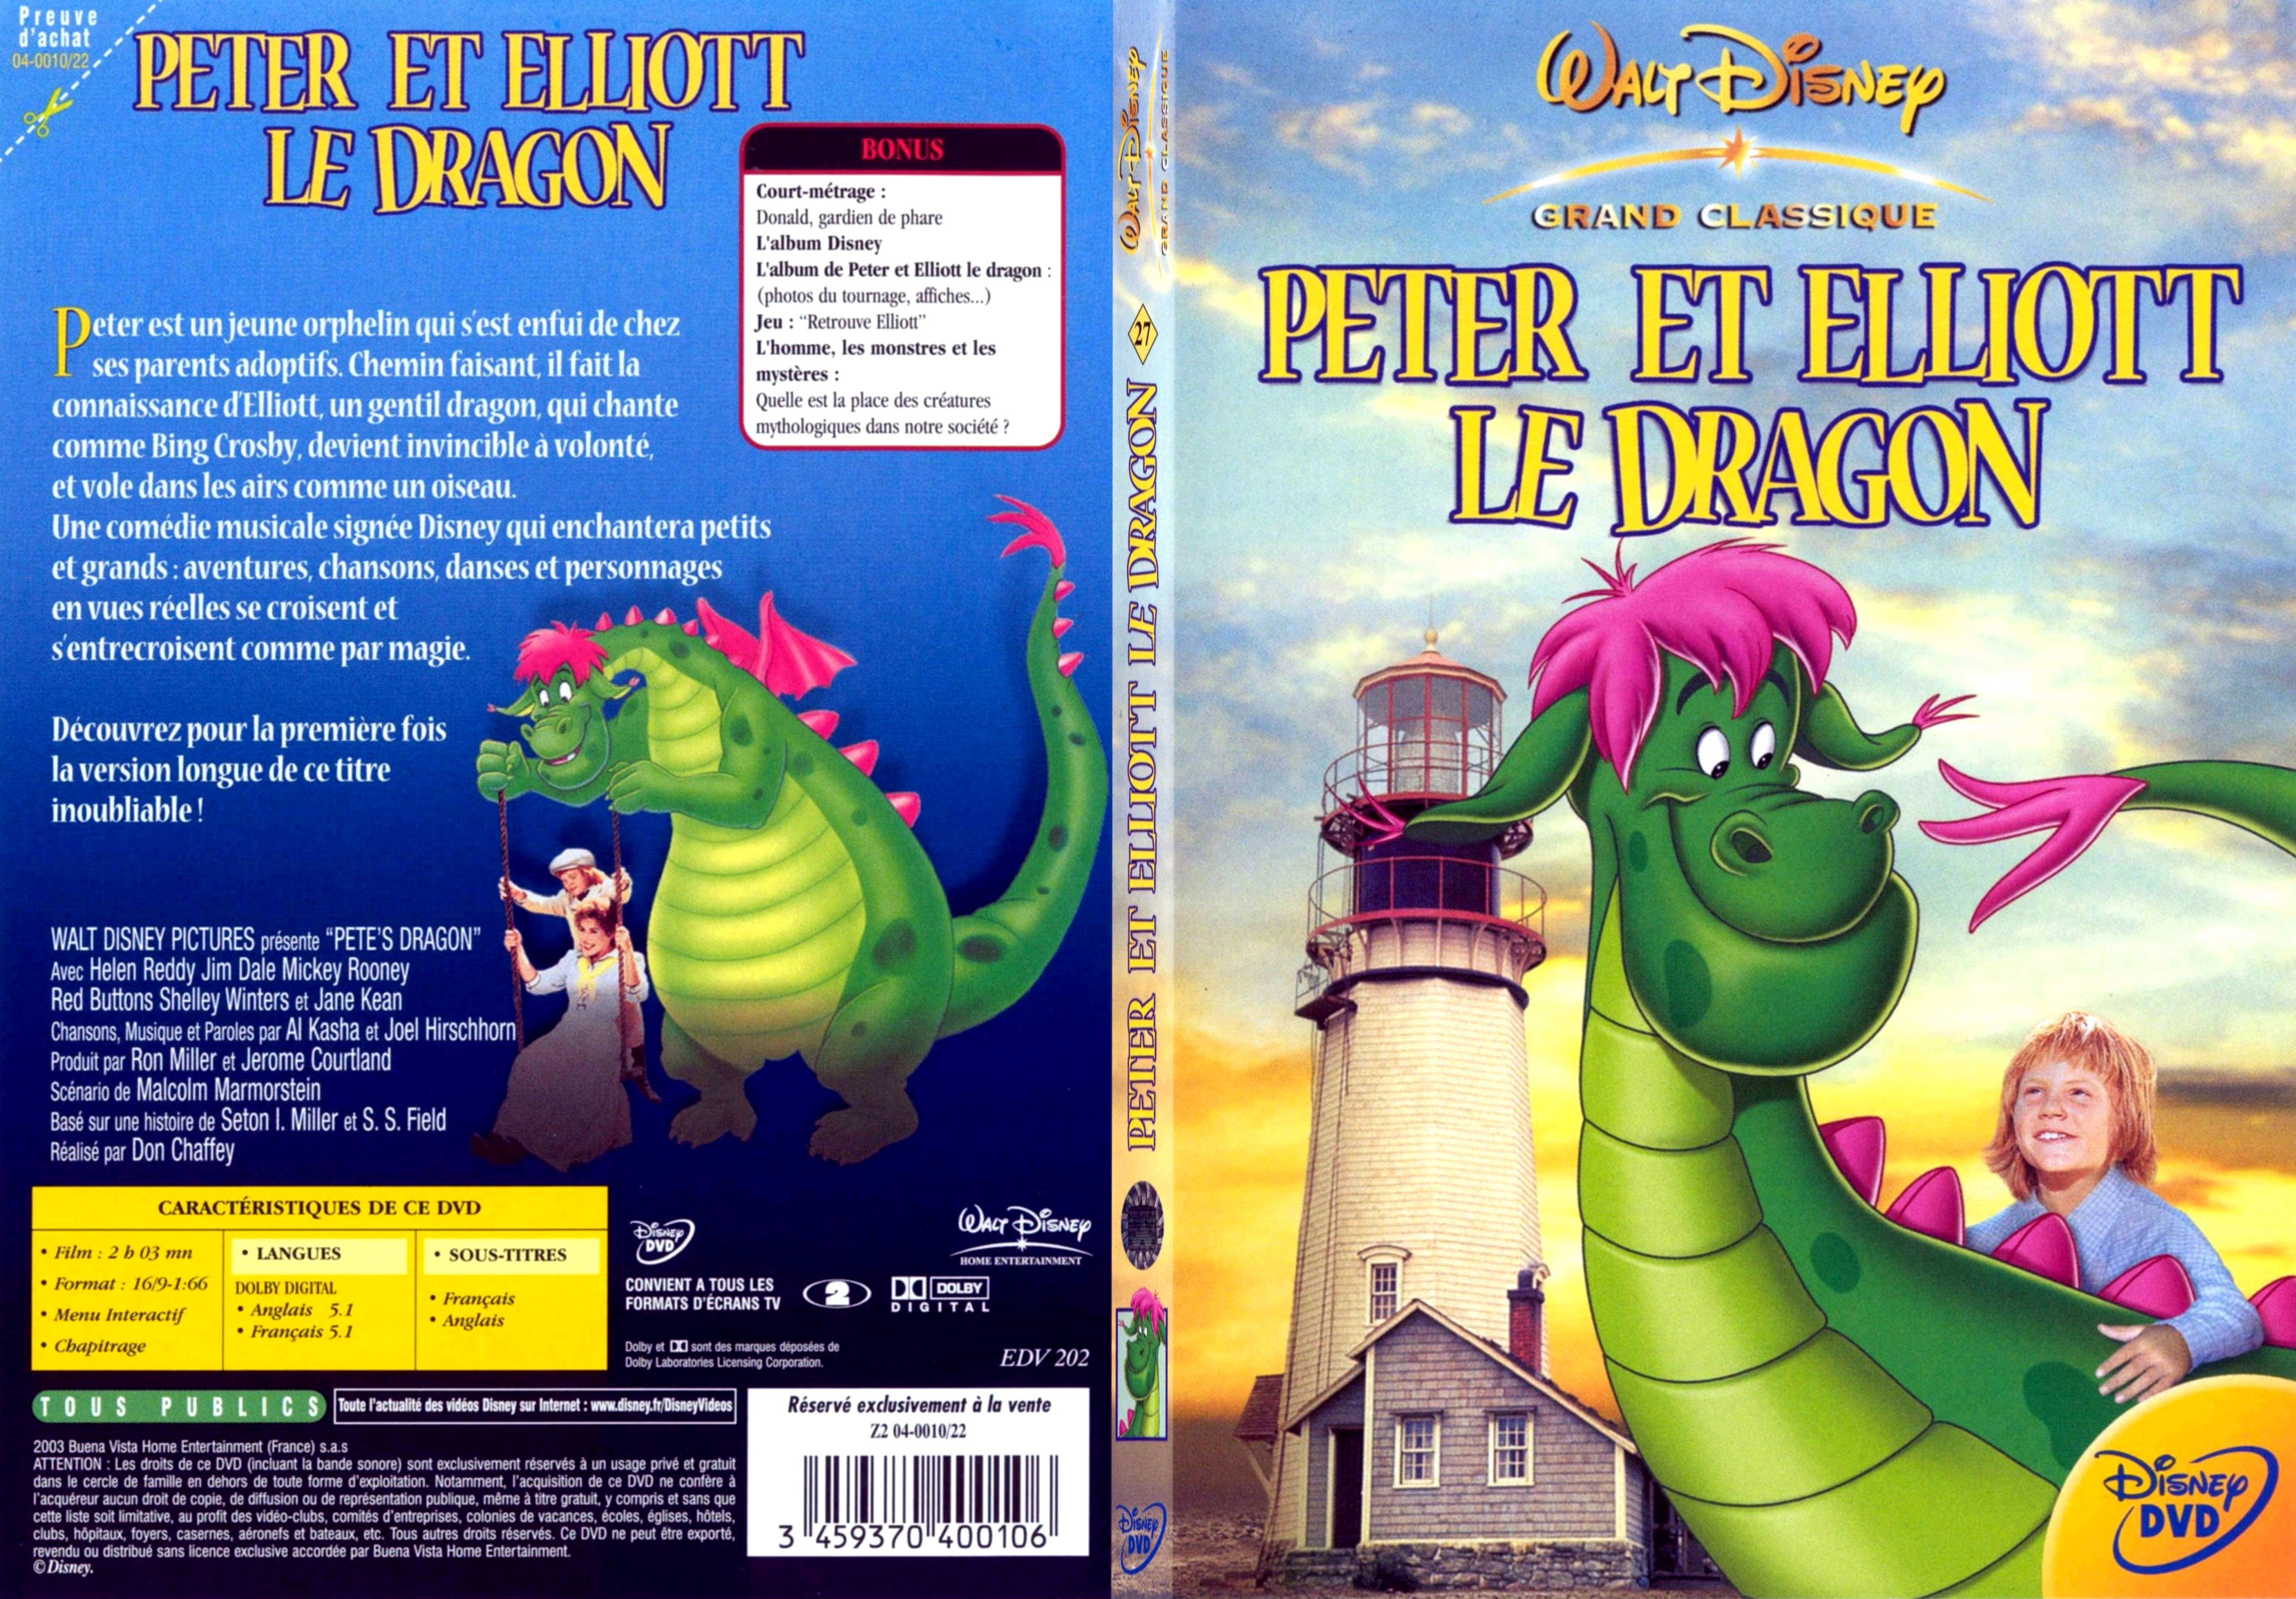 Jaquette DVD Peter et Elliot le dragon - SLIM